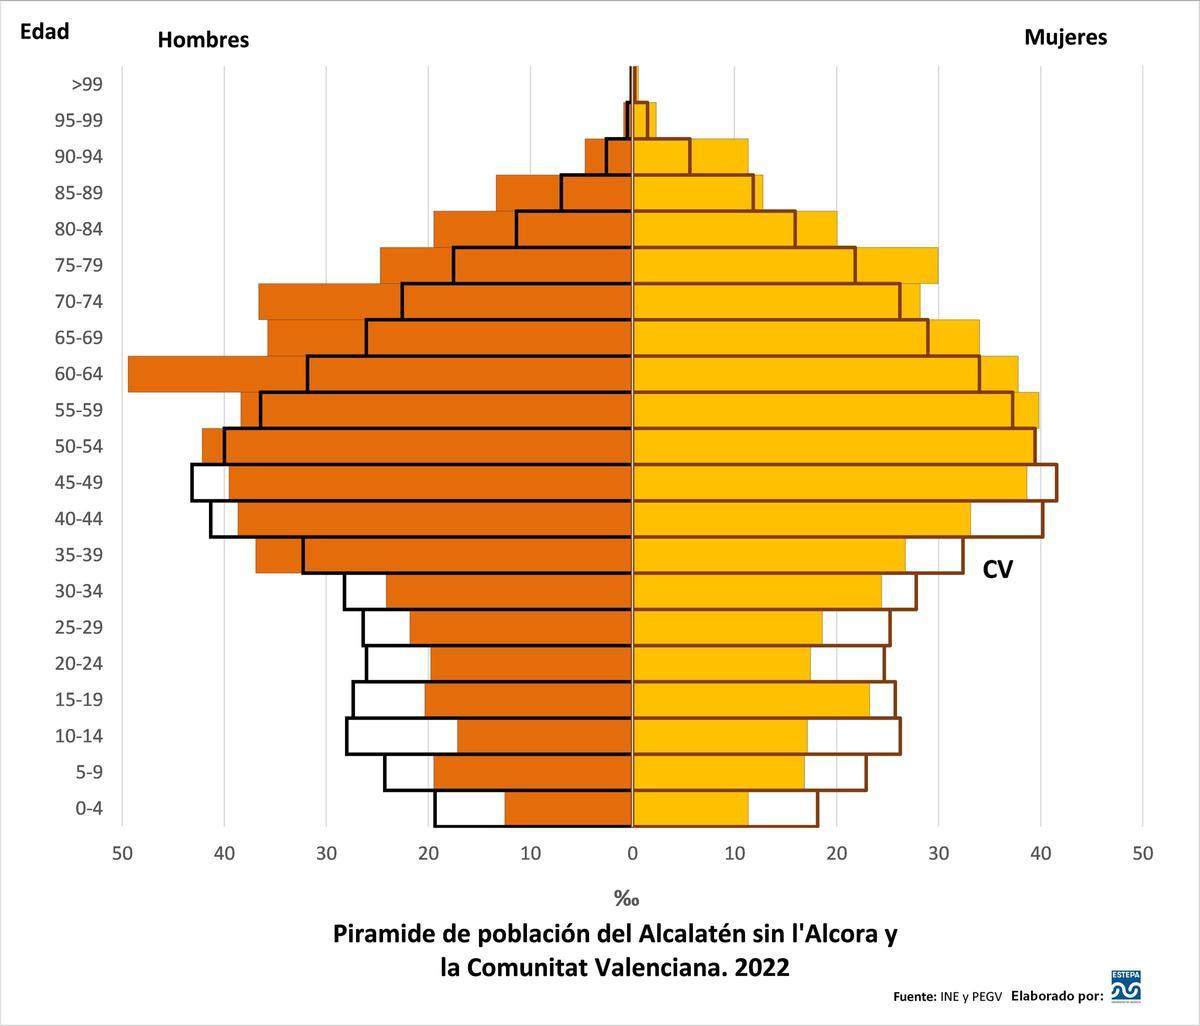 Pirámide de Población de l'Alcalatén sin l'Alcora y la Comunitat Valenciana. 2022.